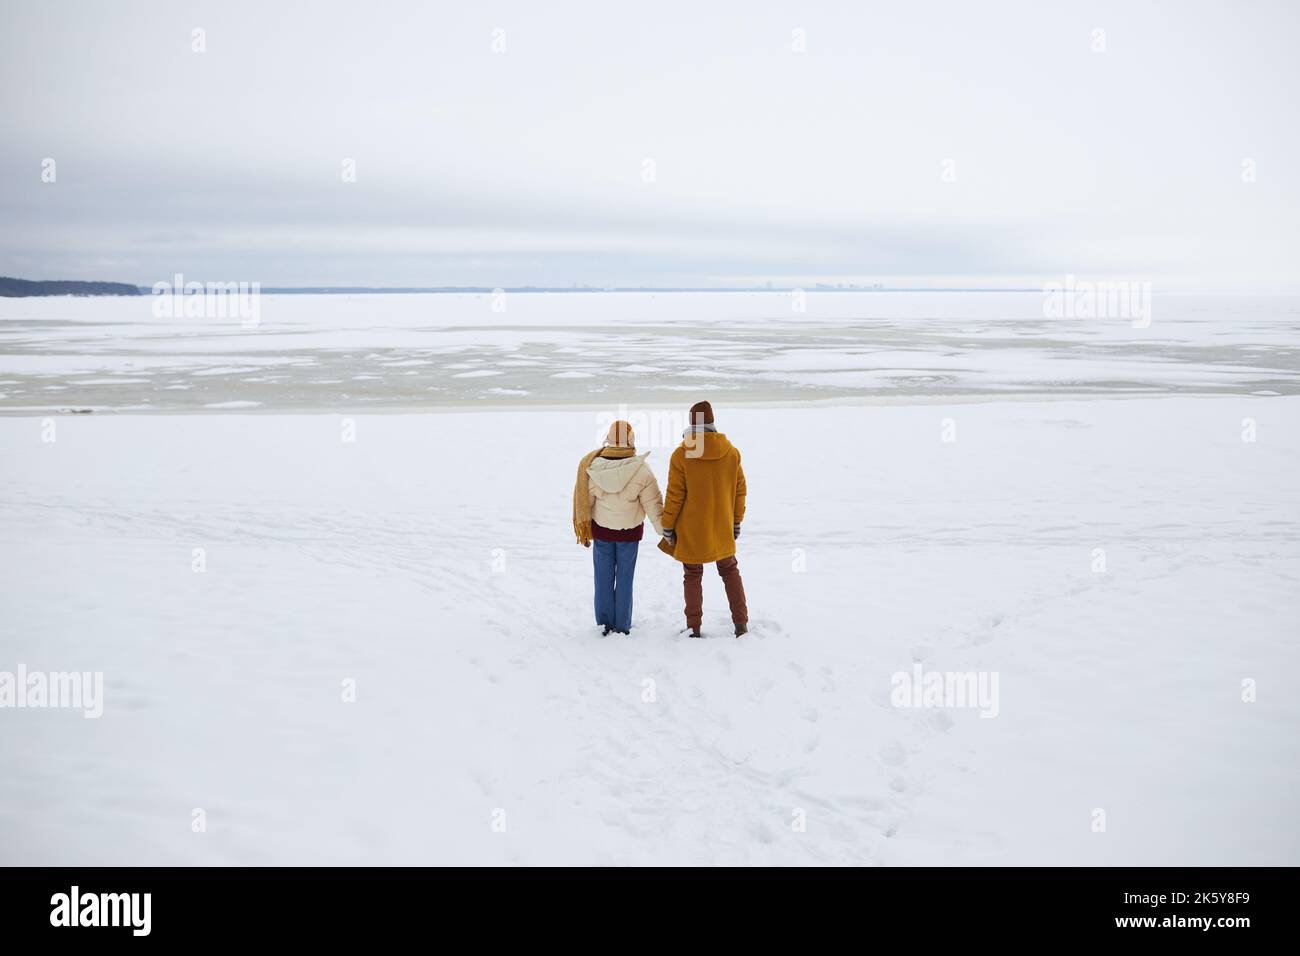 Weitwinkelaufnahme eines jungen Paares, das am gefrorenen Meer steht und die minimale Winterlandschaft überblickt, Kopierfläche Stockfoto